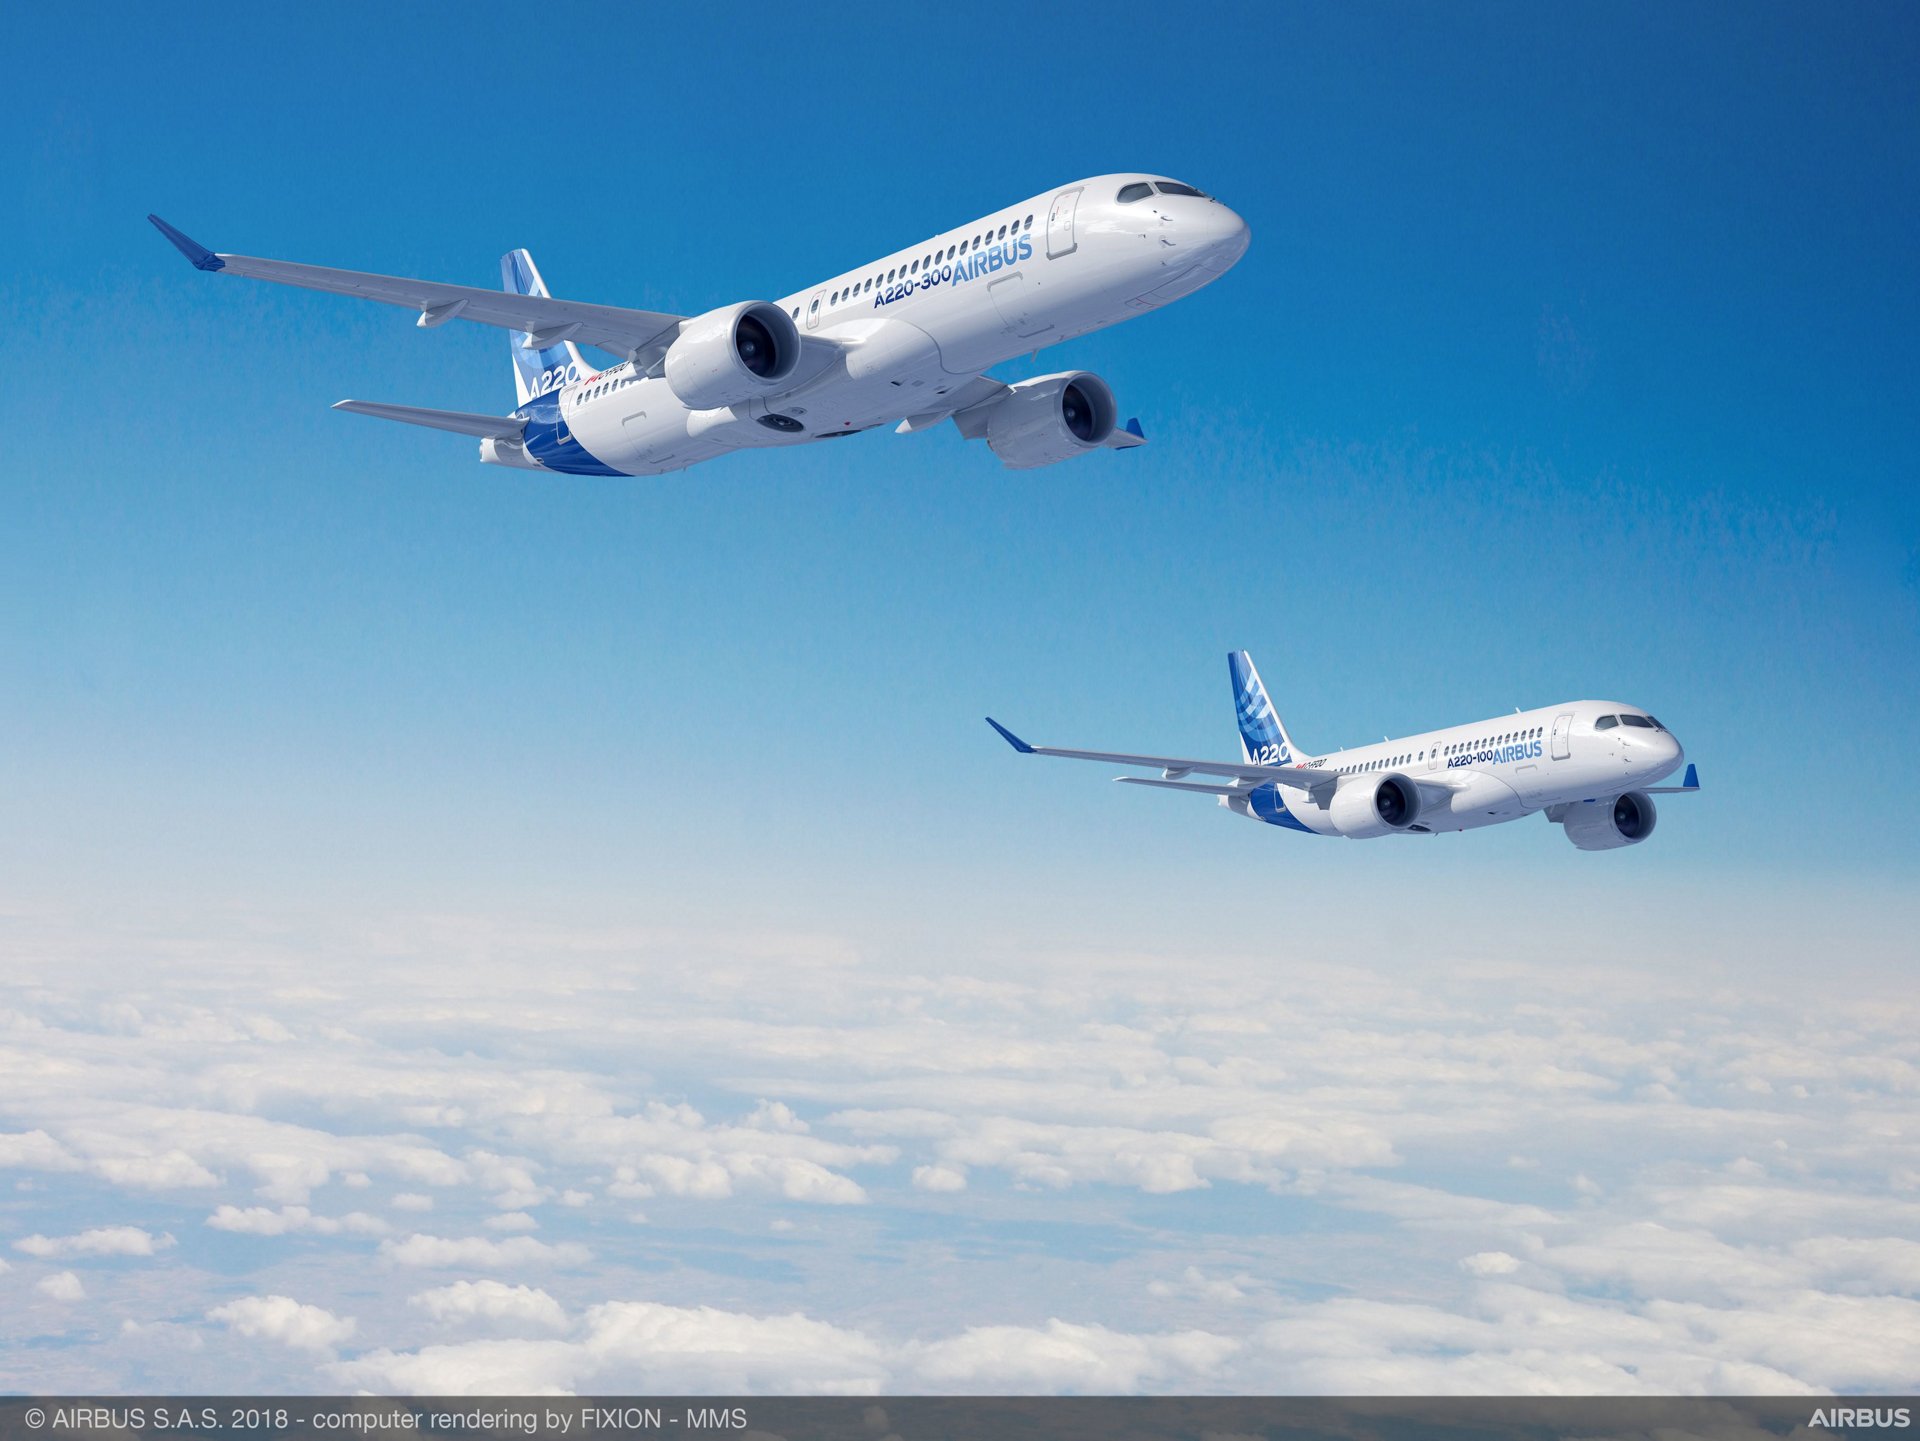 Airbus rachète la part de l'avionneur canadien Bombardier dans le projet A220